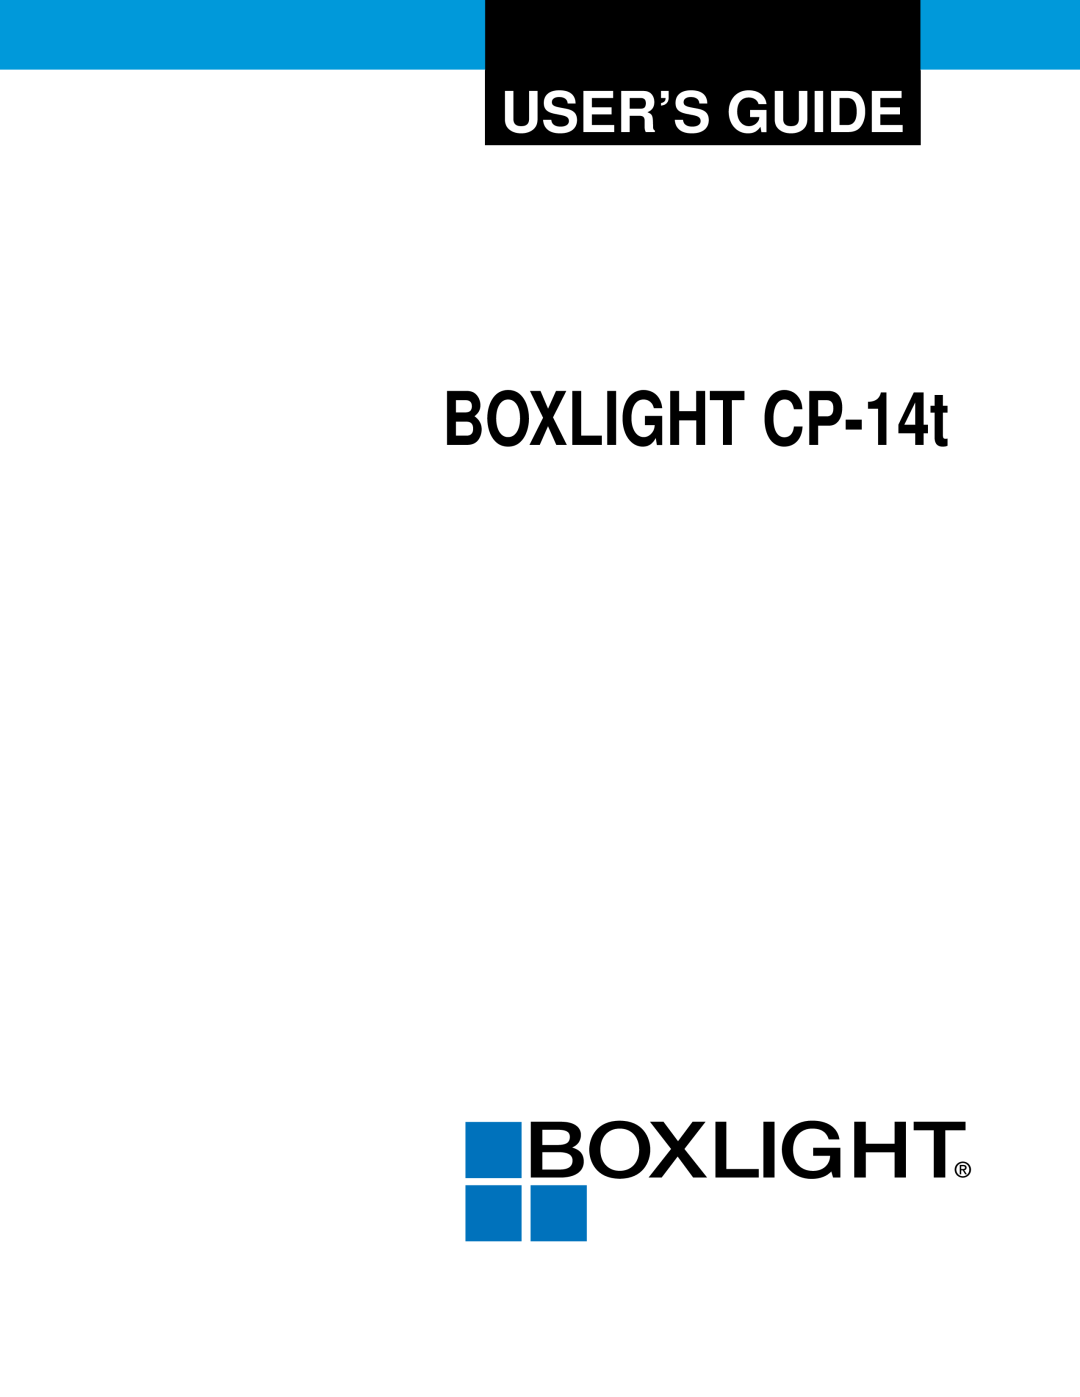 BOXLIGHT manual BOXLIGHT CP-14t, User’S Guide 